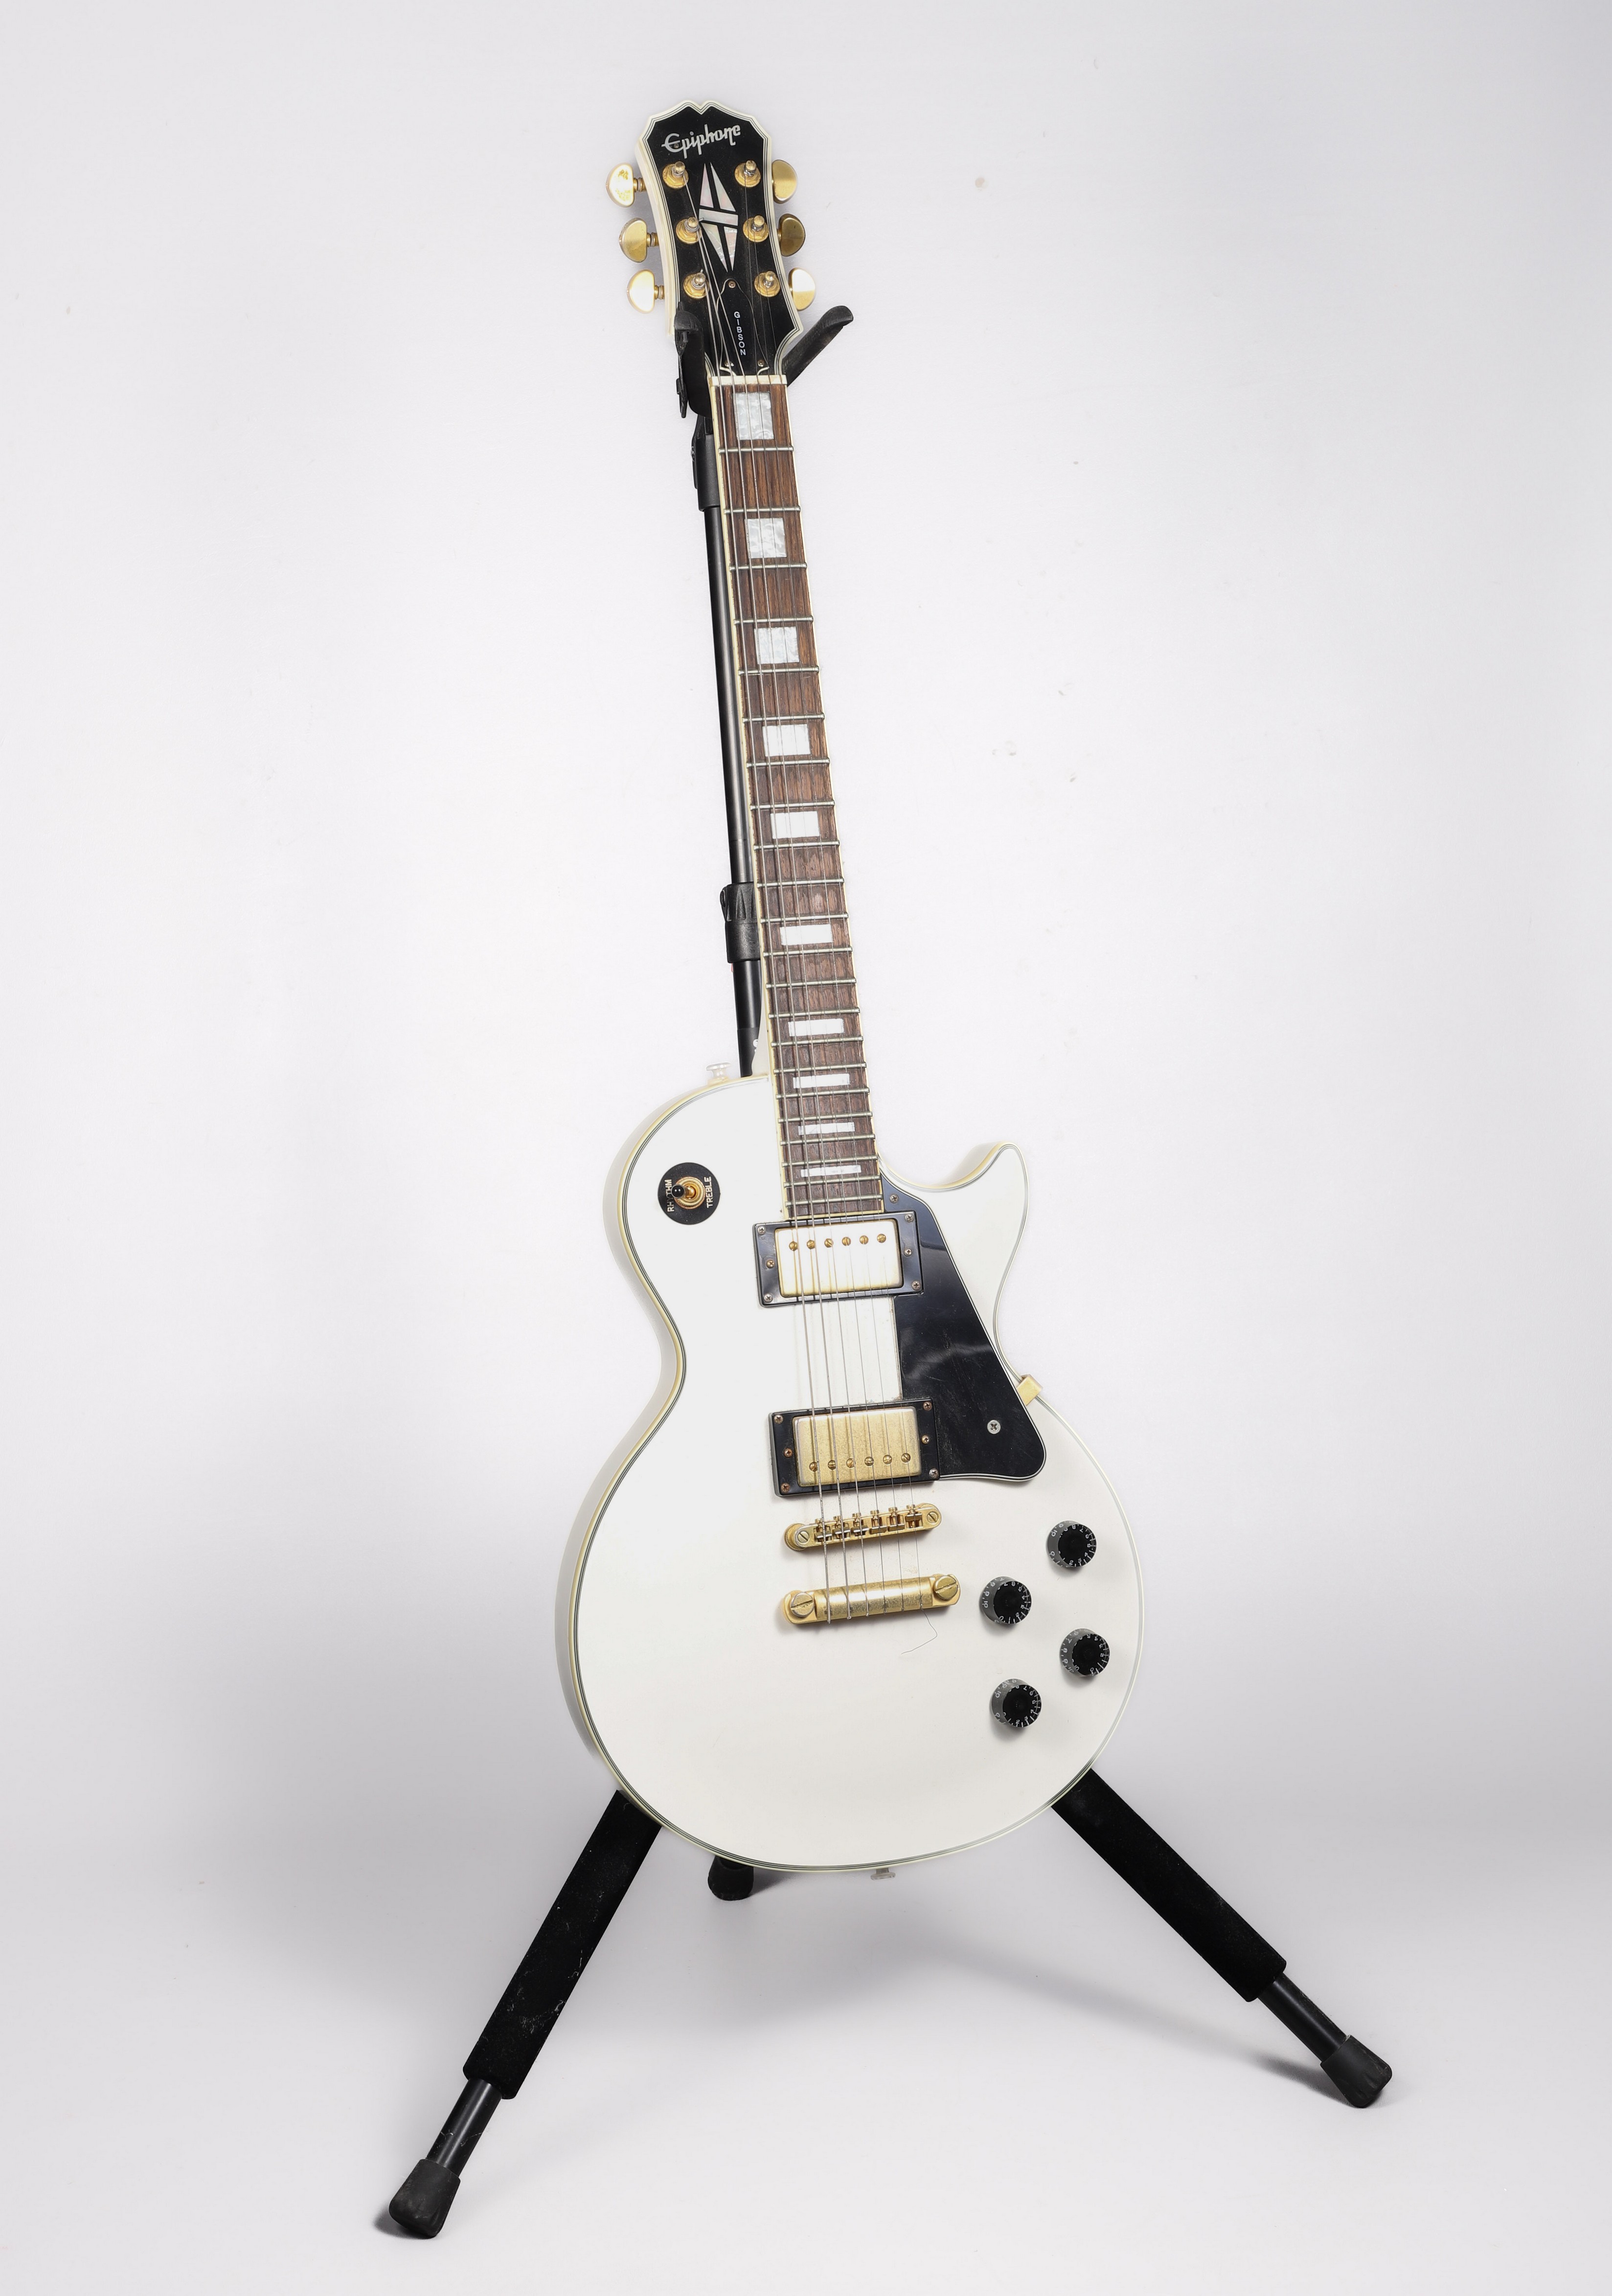 Epiphone Les Paul copy guitar, white